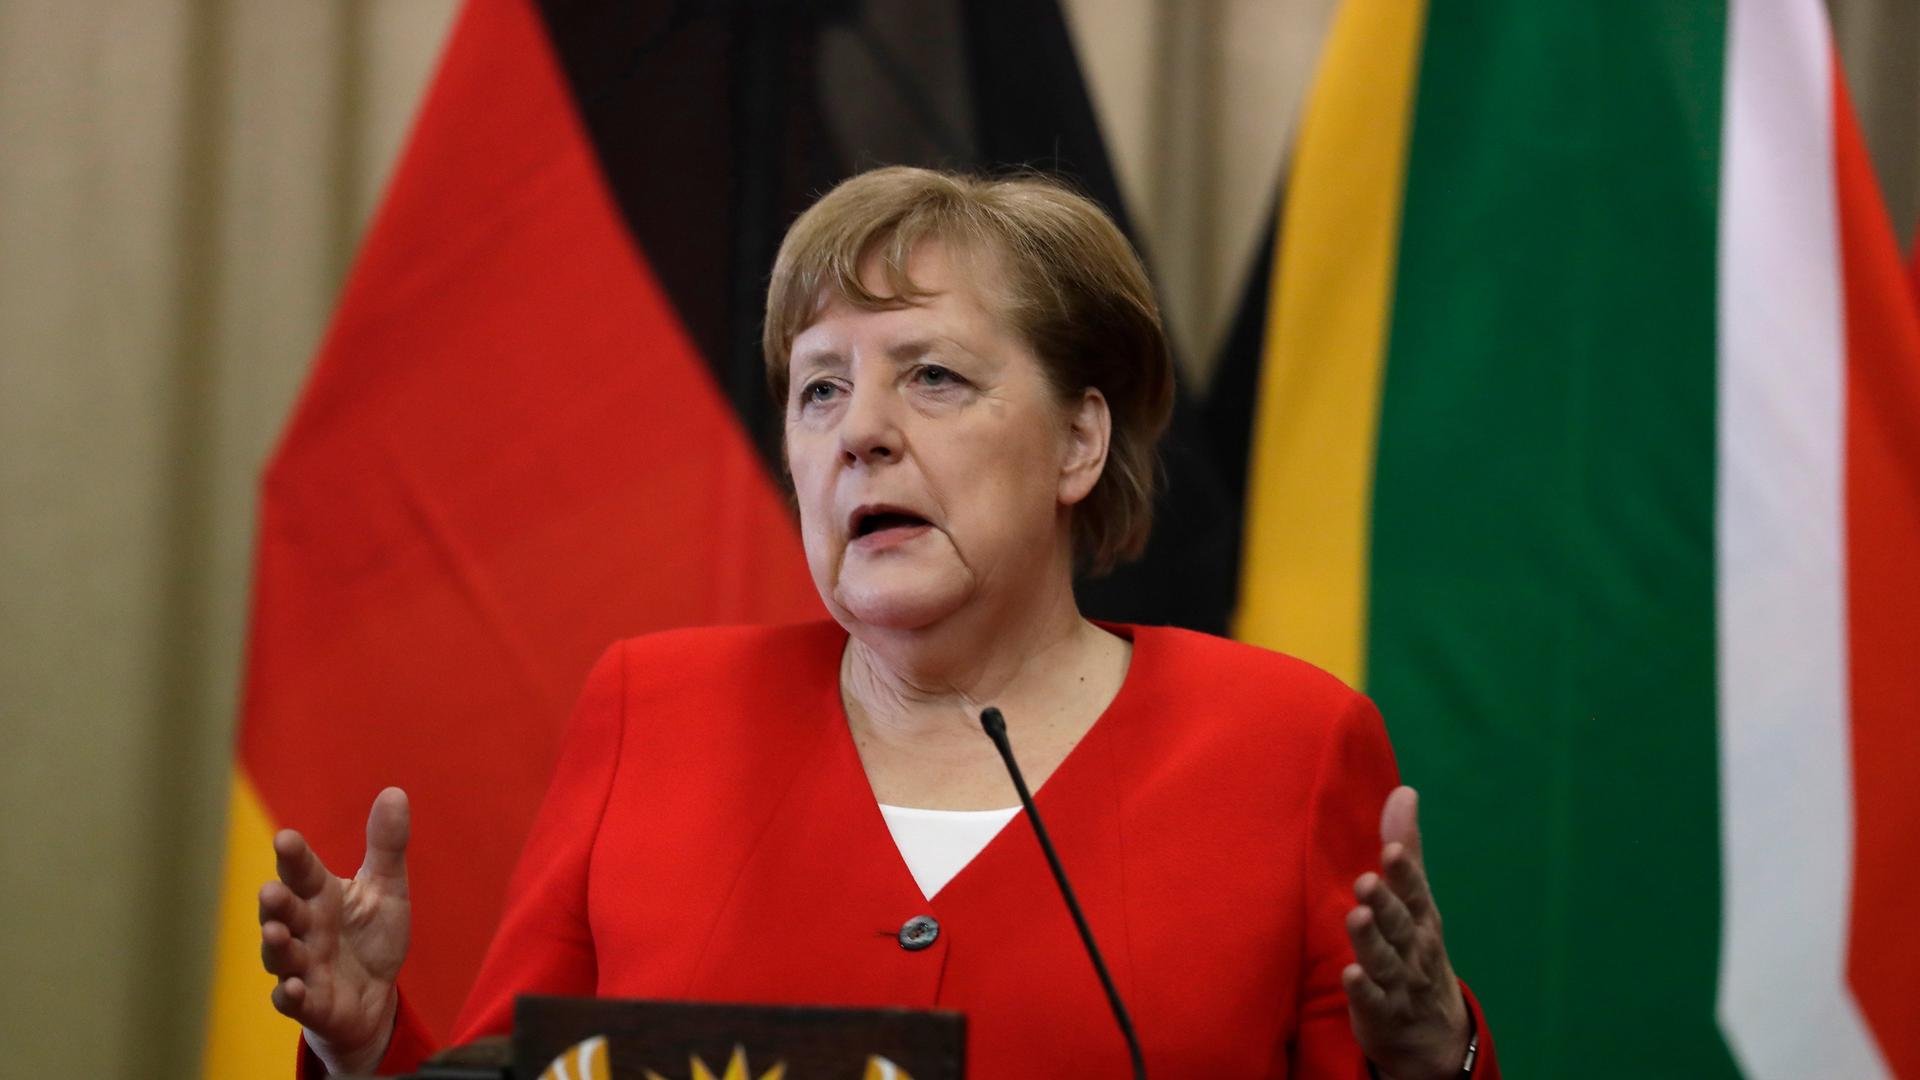 Die frühere Bundes-Kanzlerin Angela Merkel steht bei einer Presse-Konferenz hinter dem Redner-Pult. Das war auf einer Reise in das Land Süd-Afrika. 